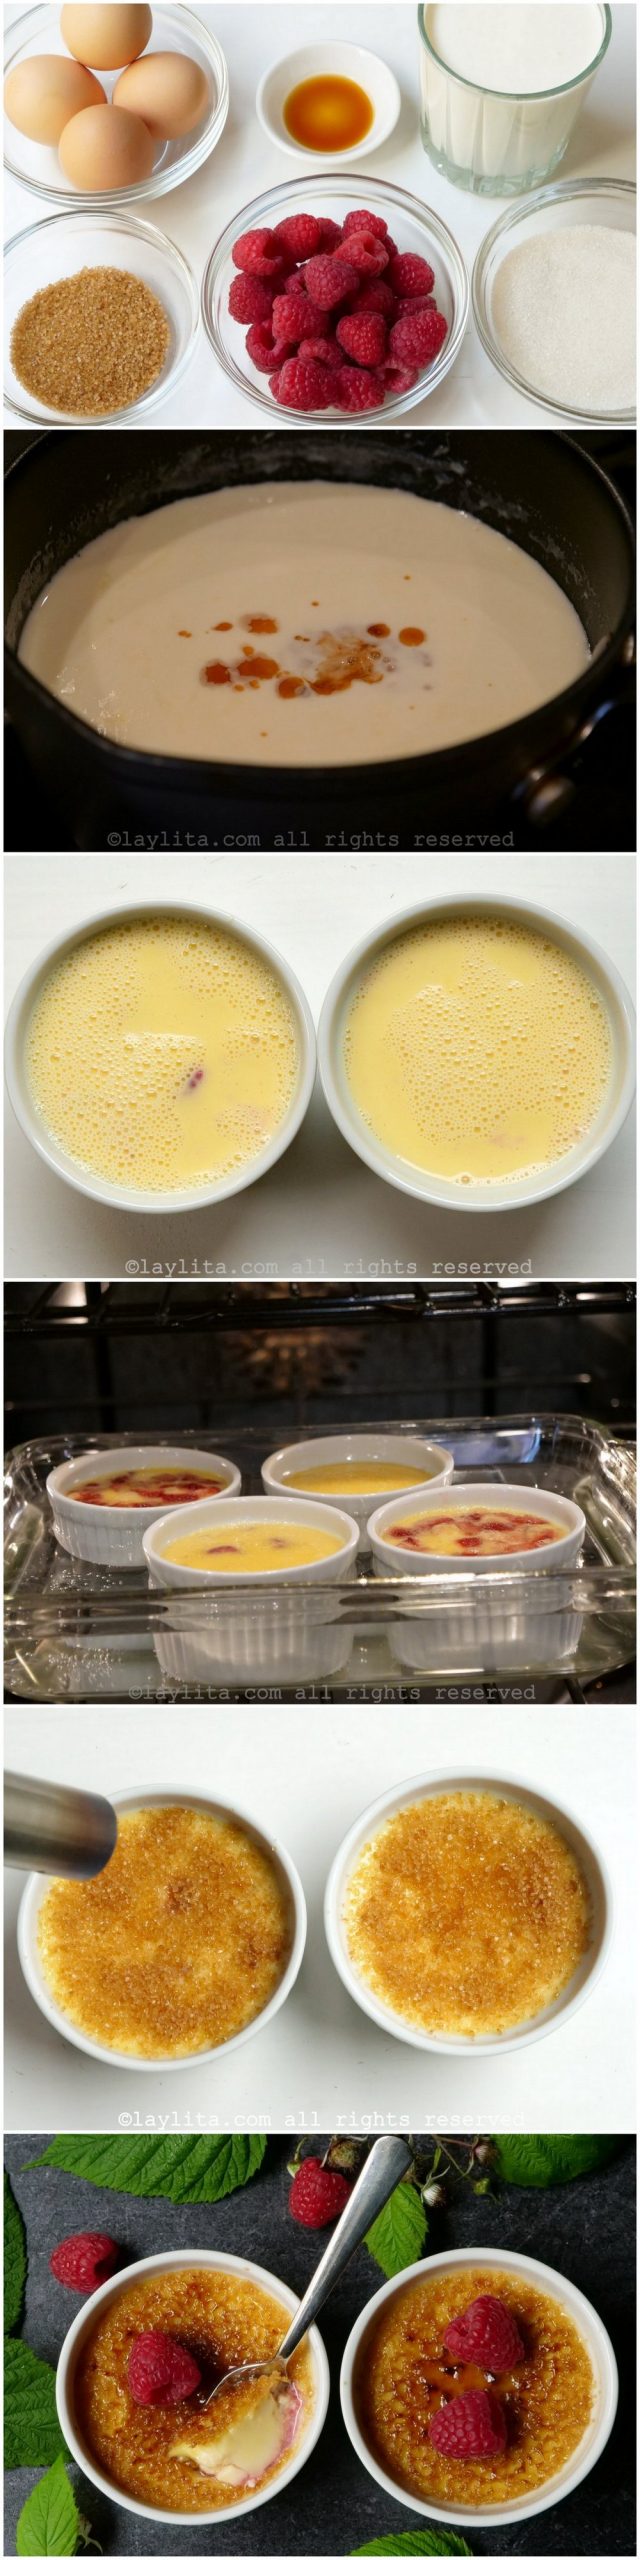 Fotos do passo a passo da preparação do crème brûlée de framboesa